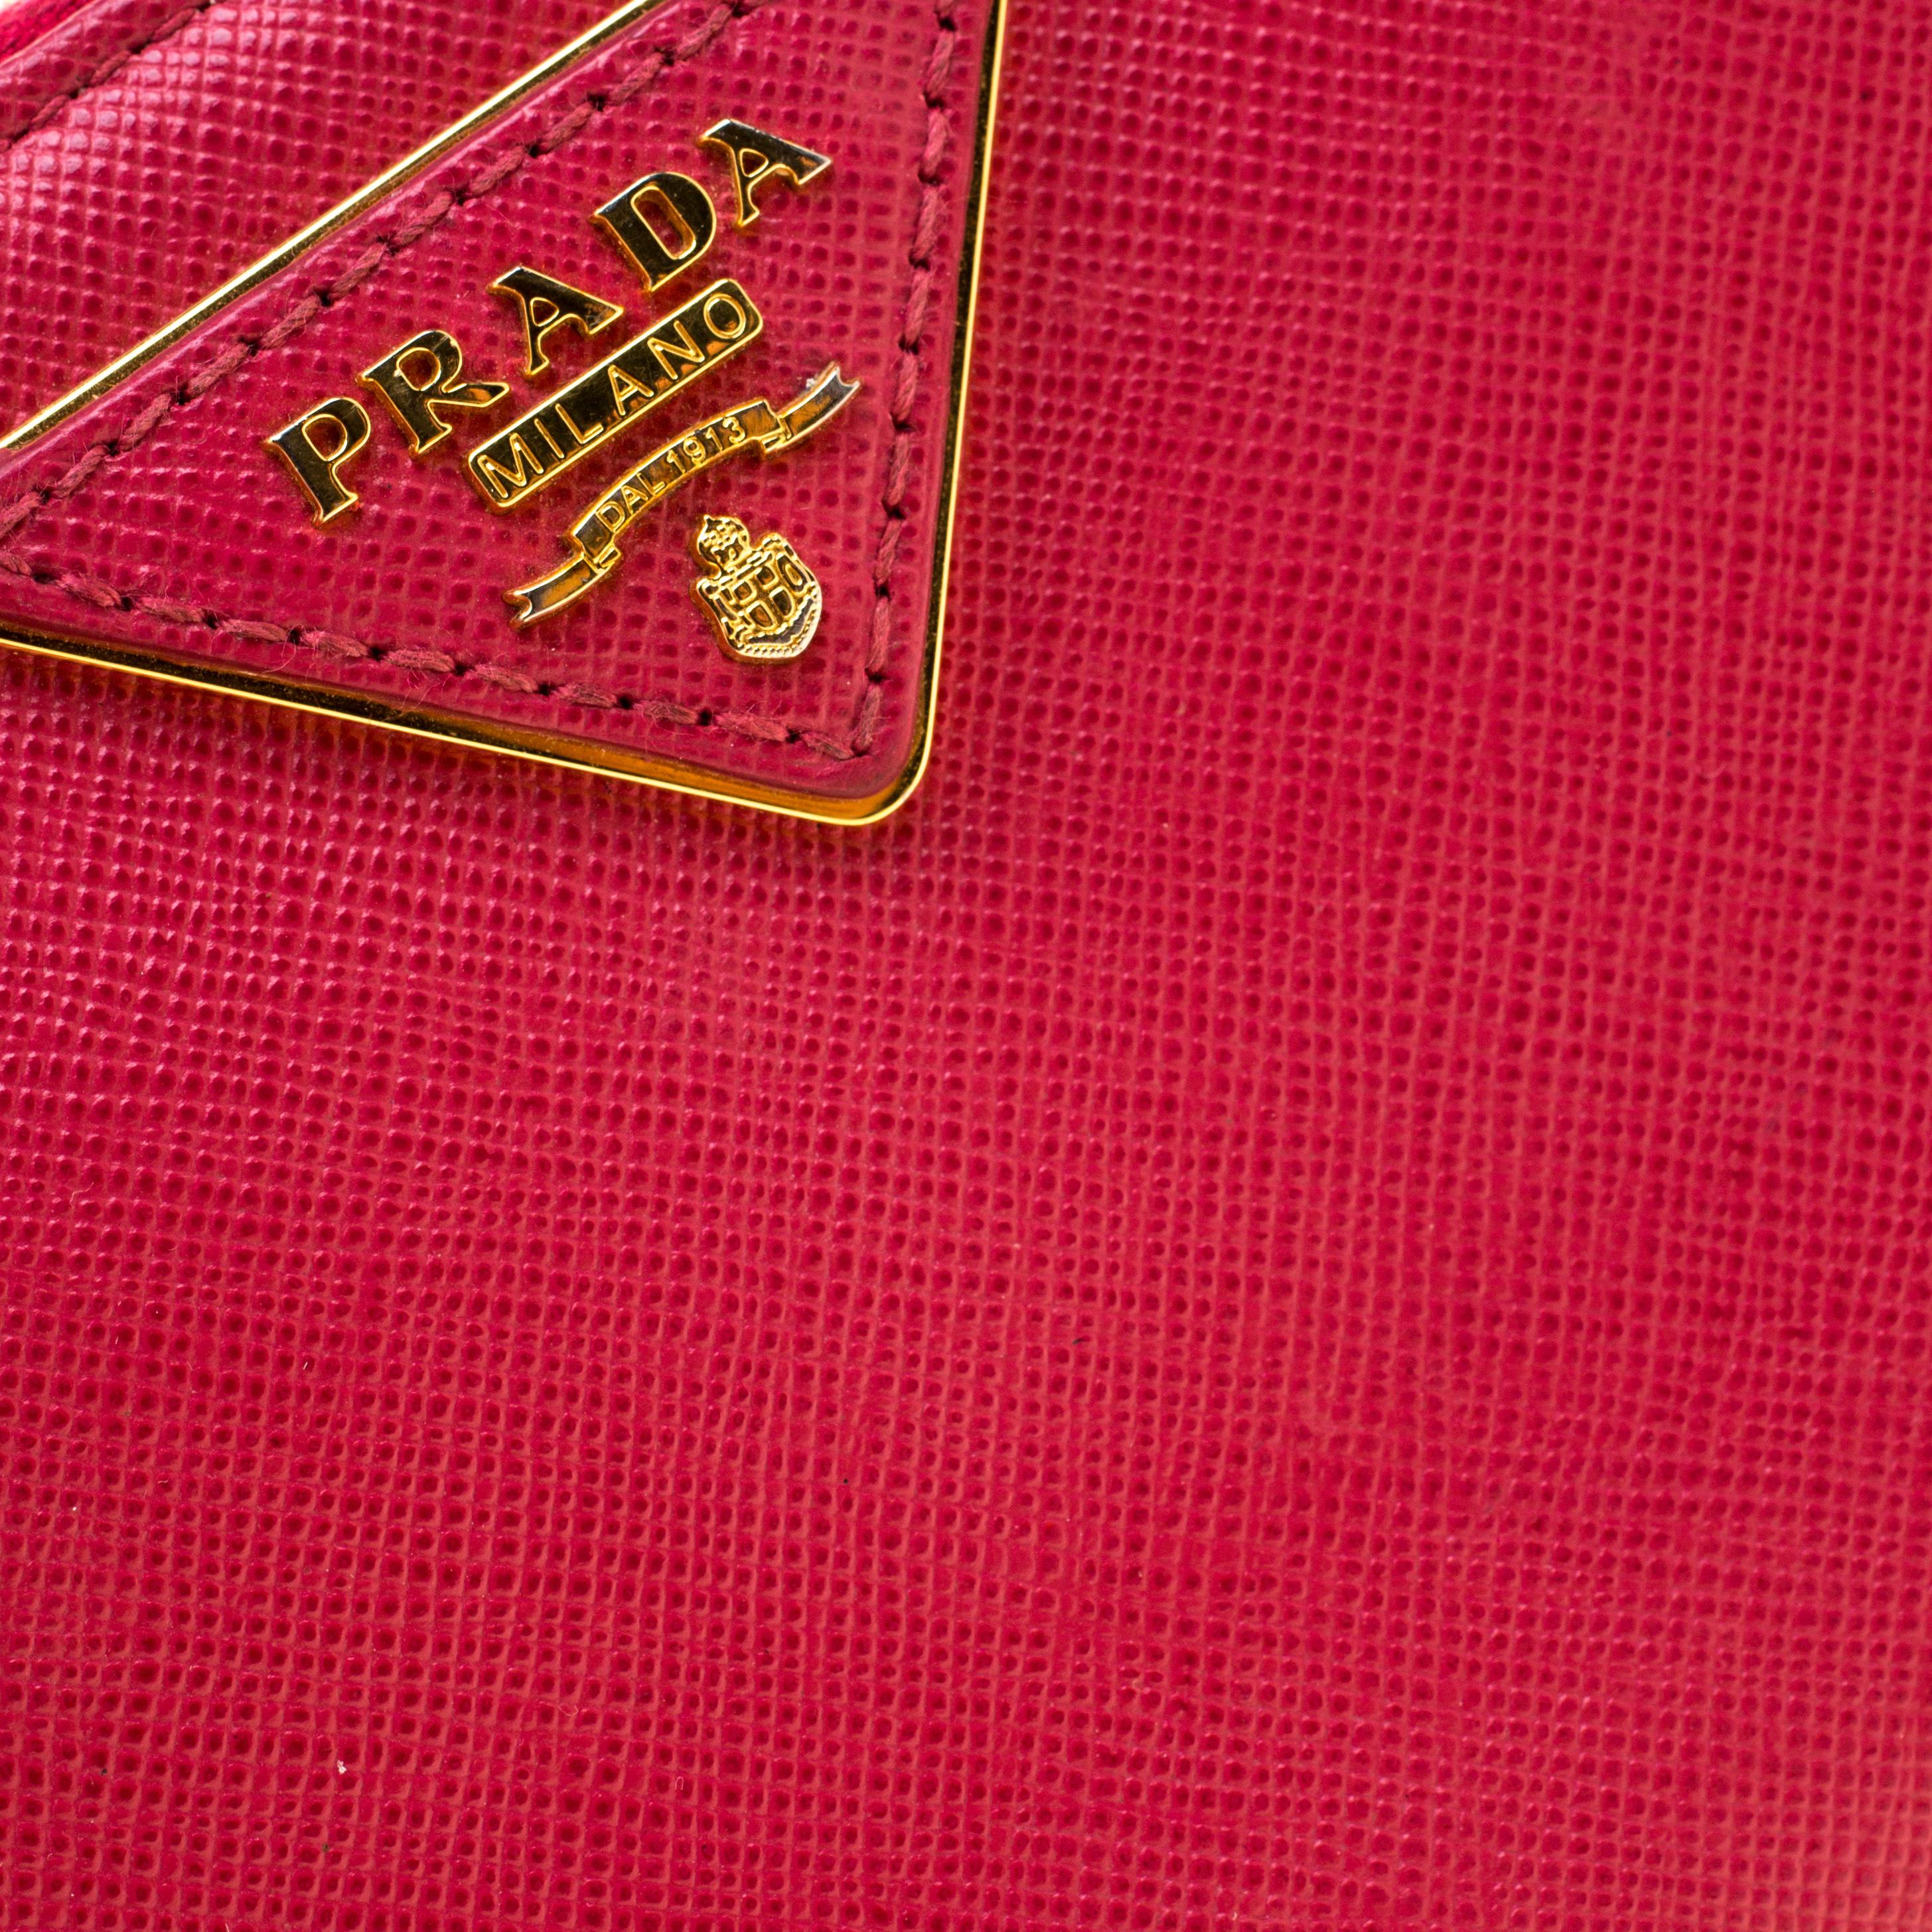 Prada Hot Pink Saffiano Leather Zip Around Wallet 1